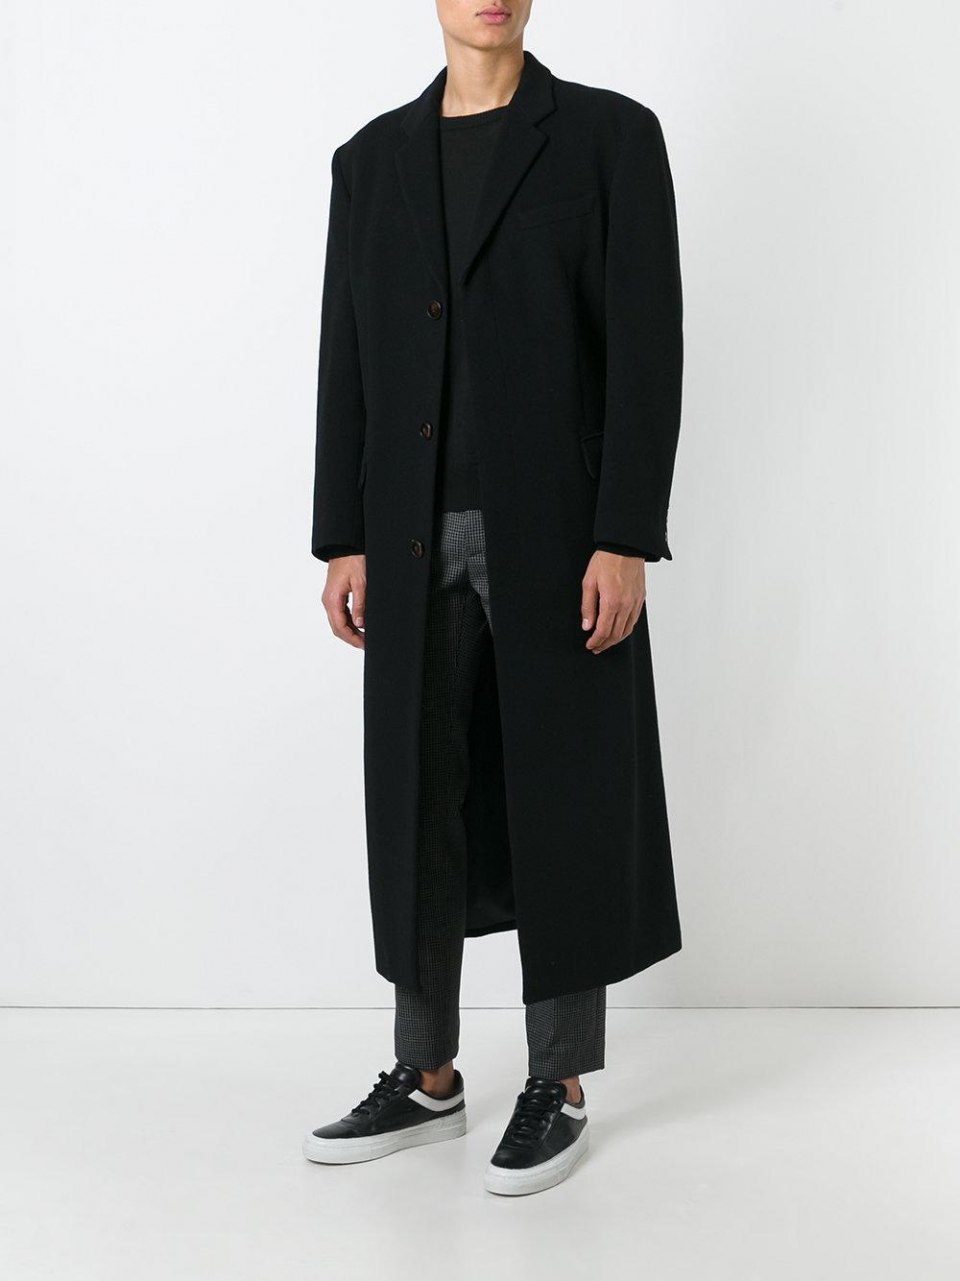 Мужское пальто ниже колена. Пальто мужское Formenti 2020. Пальто мужское черное длинное. Пальто до колен мужское. Пальто ниже колена мужское.